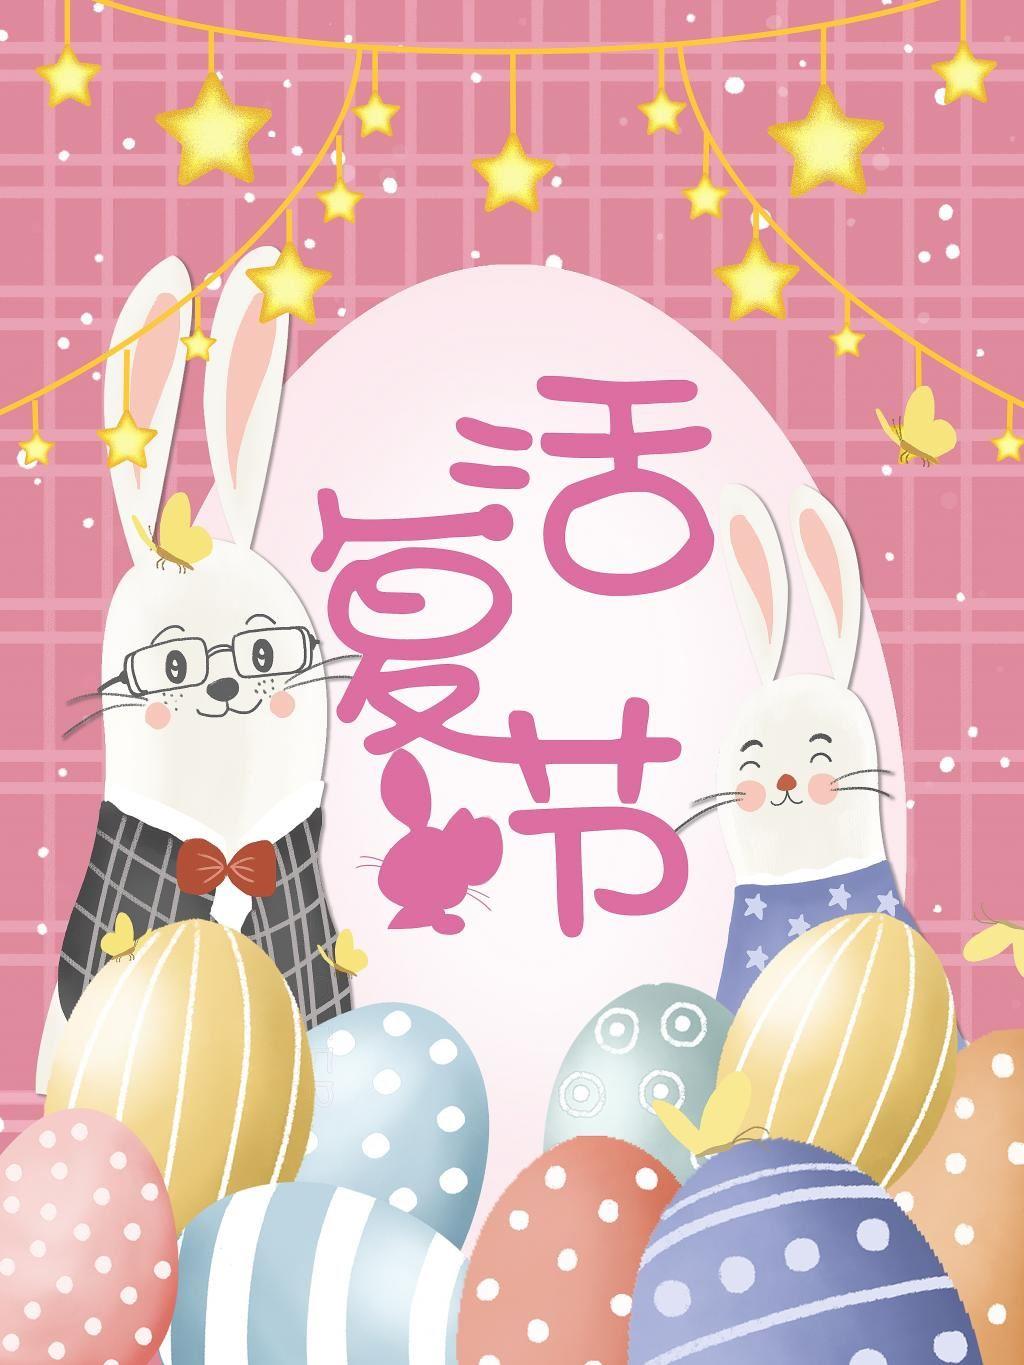 可爱卡通兔子的复活节彩蛋图片